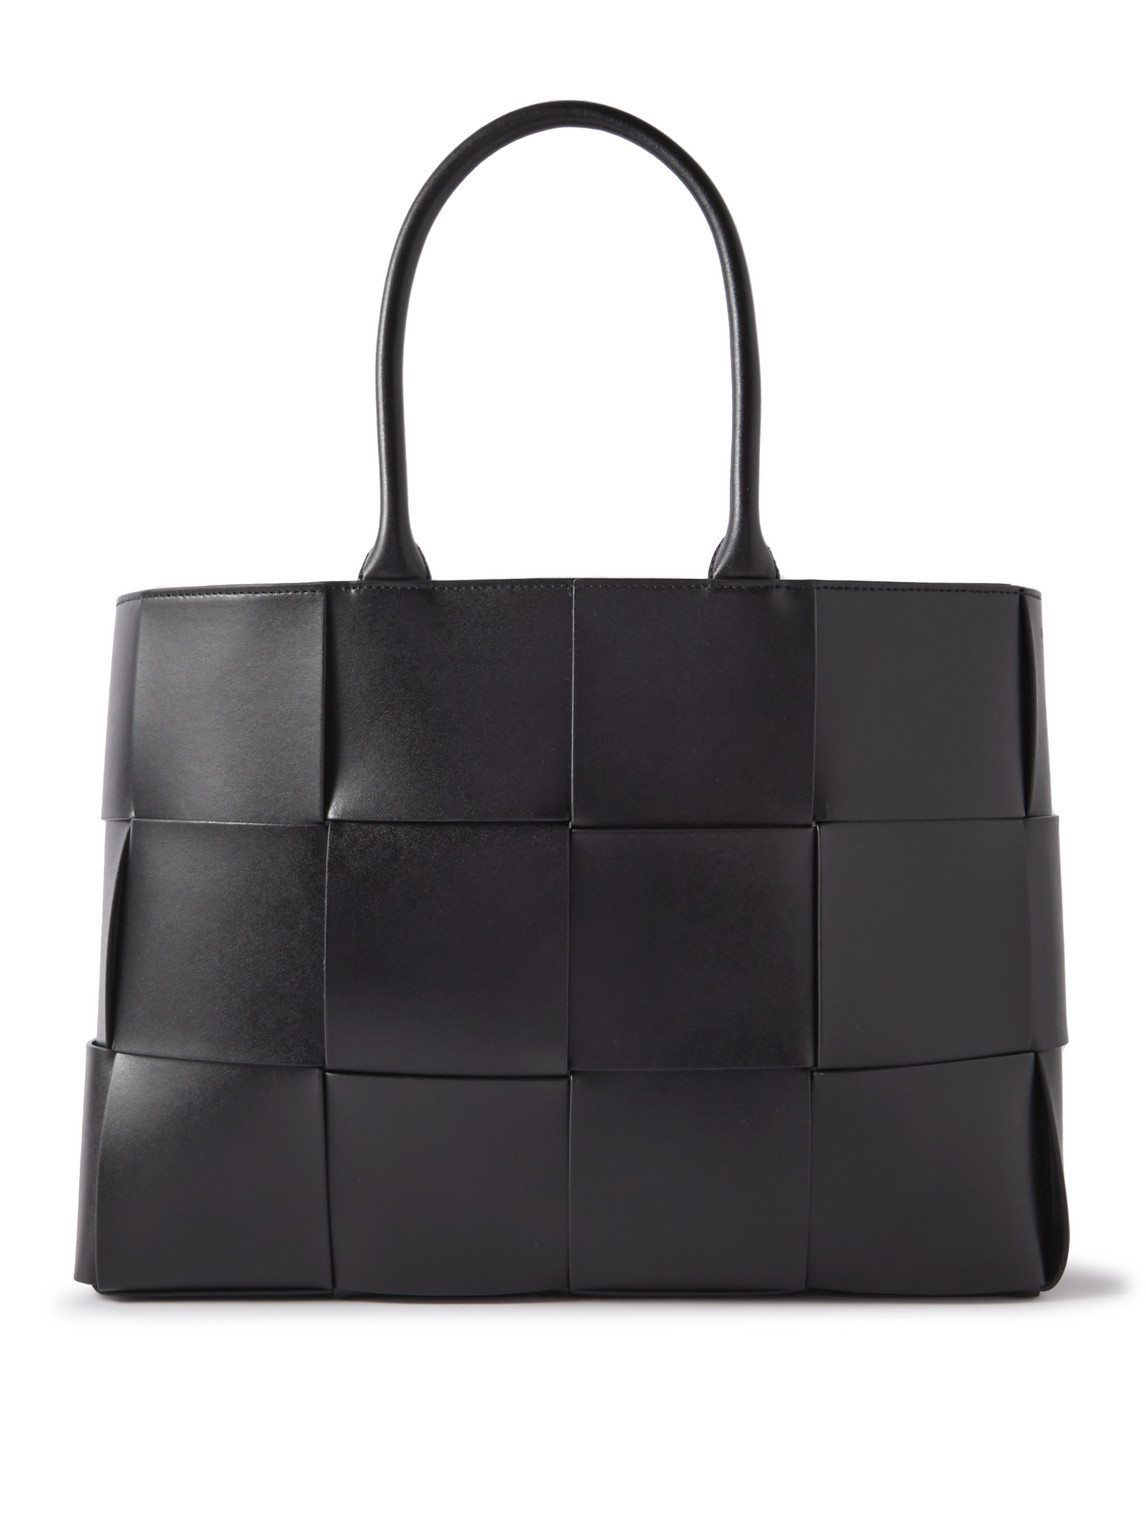 Bottega Veneta Intrecciato Leather Tote Bag In Black